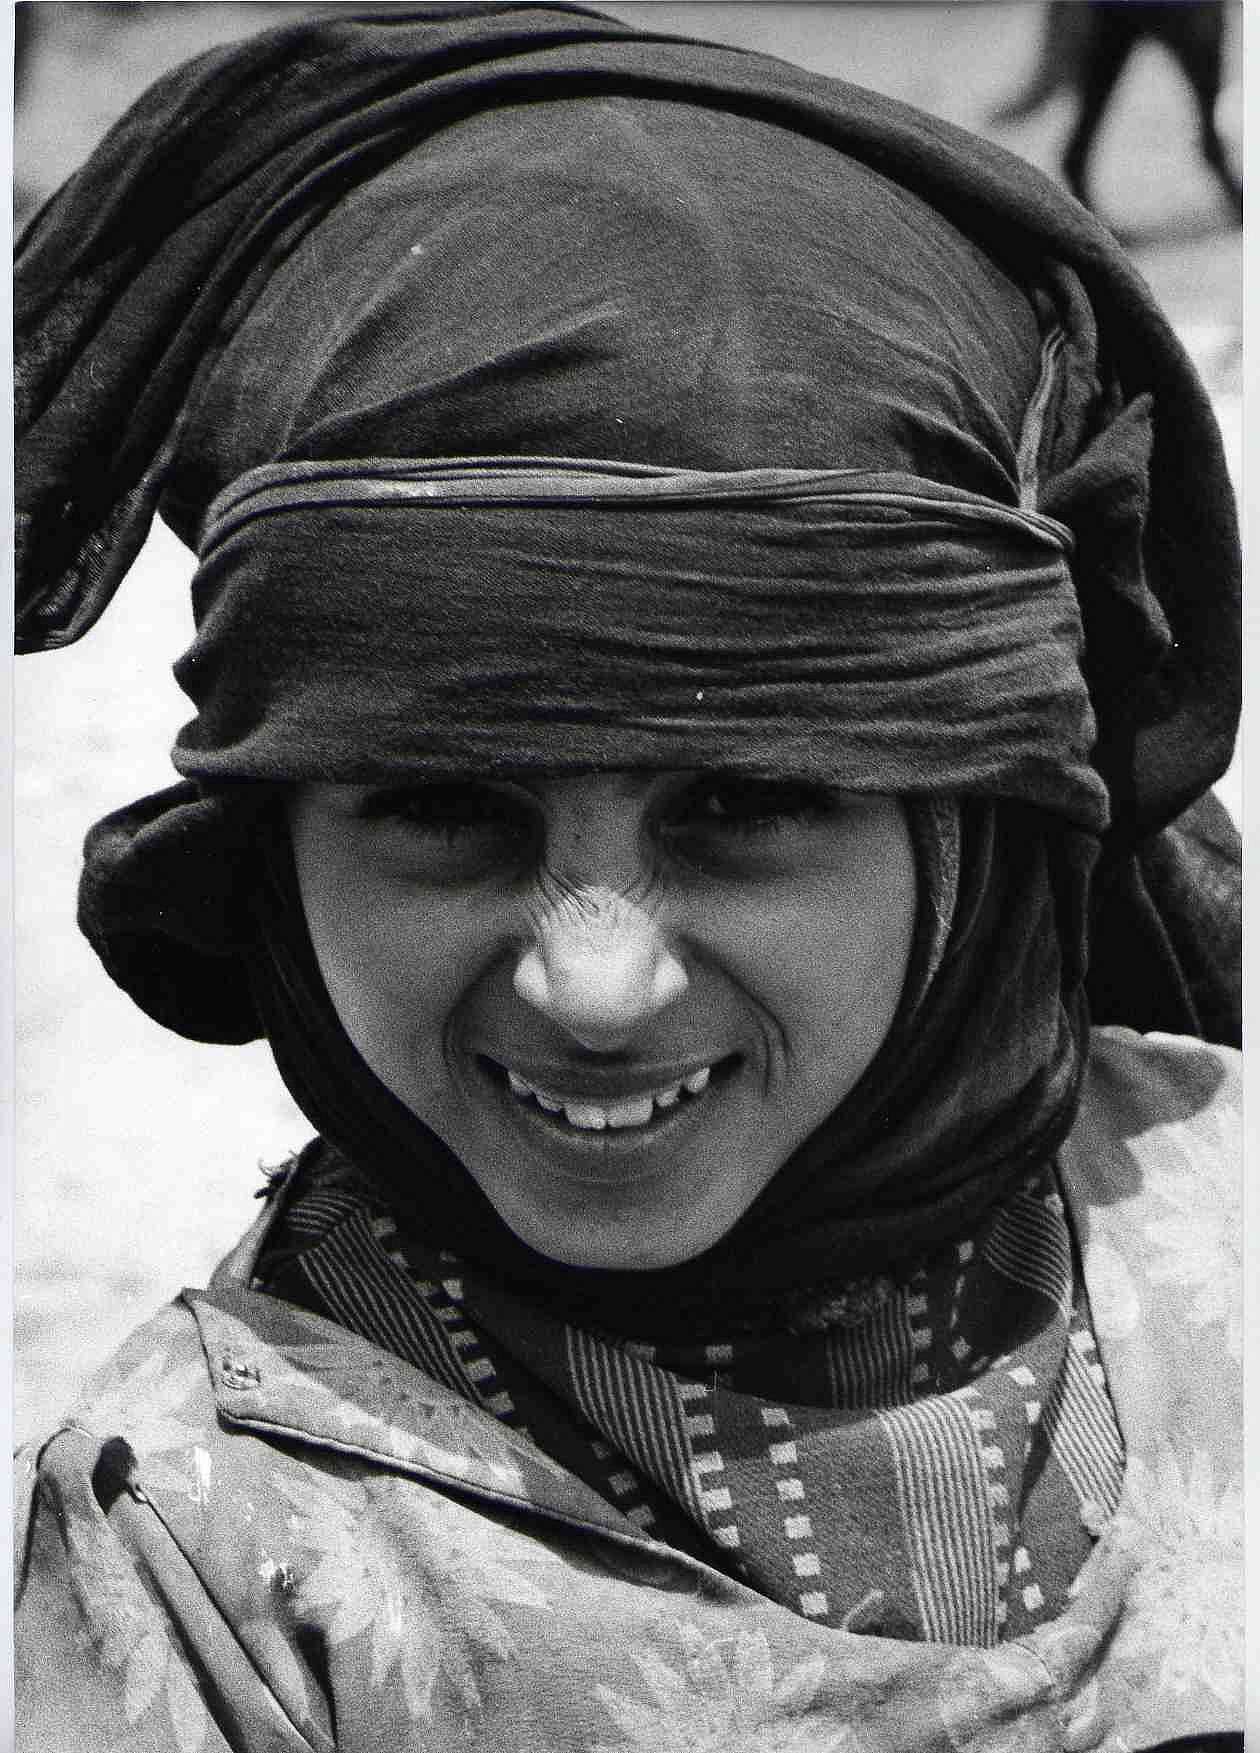 ... smile ... (Yemen)